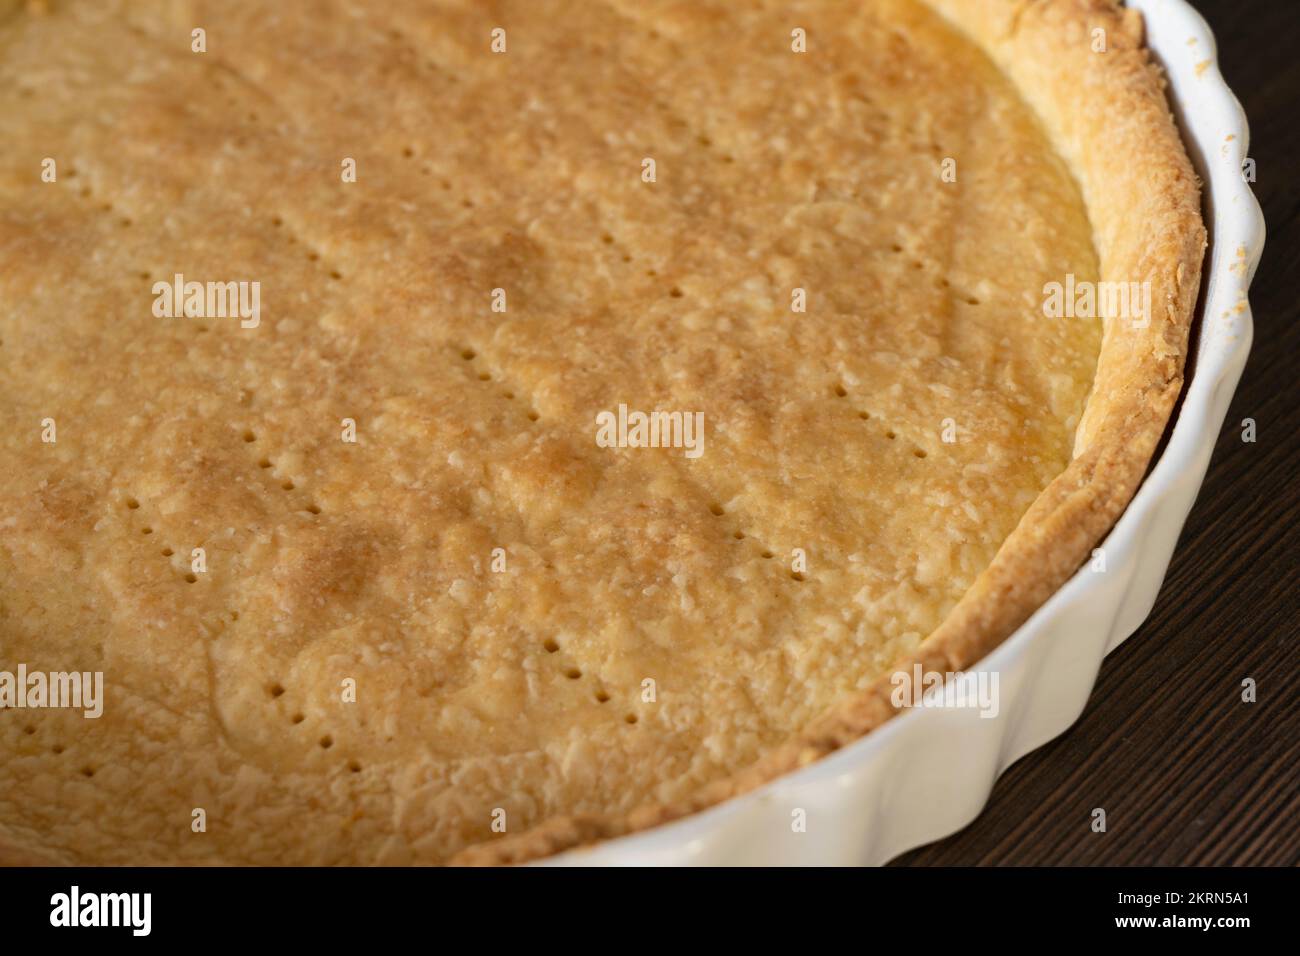 Un coffret de pâtisserie à croûte courte à l'aveugle dans un plat de tarte blanc en céramique/quiche, prêt à être rempli. Concept - préparation des aliments Banque D'Images